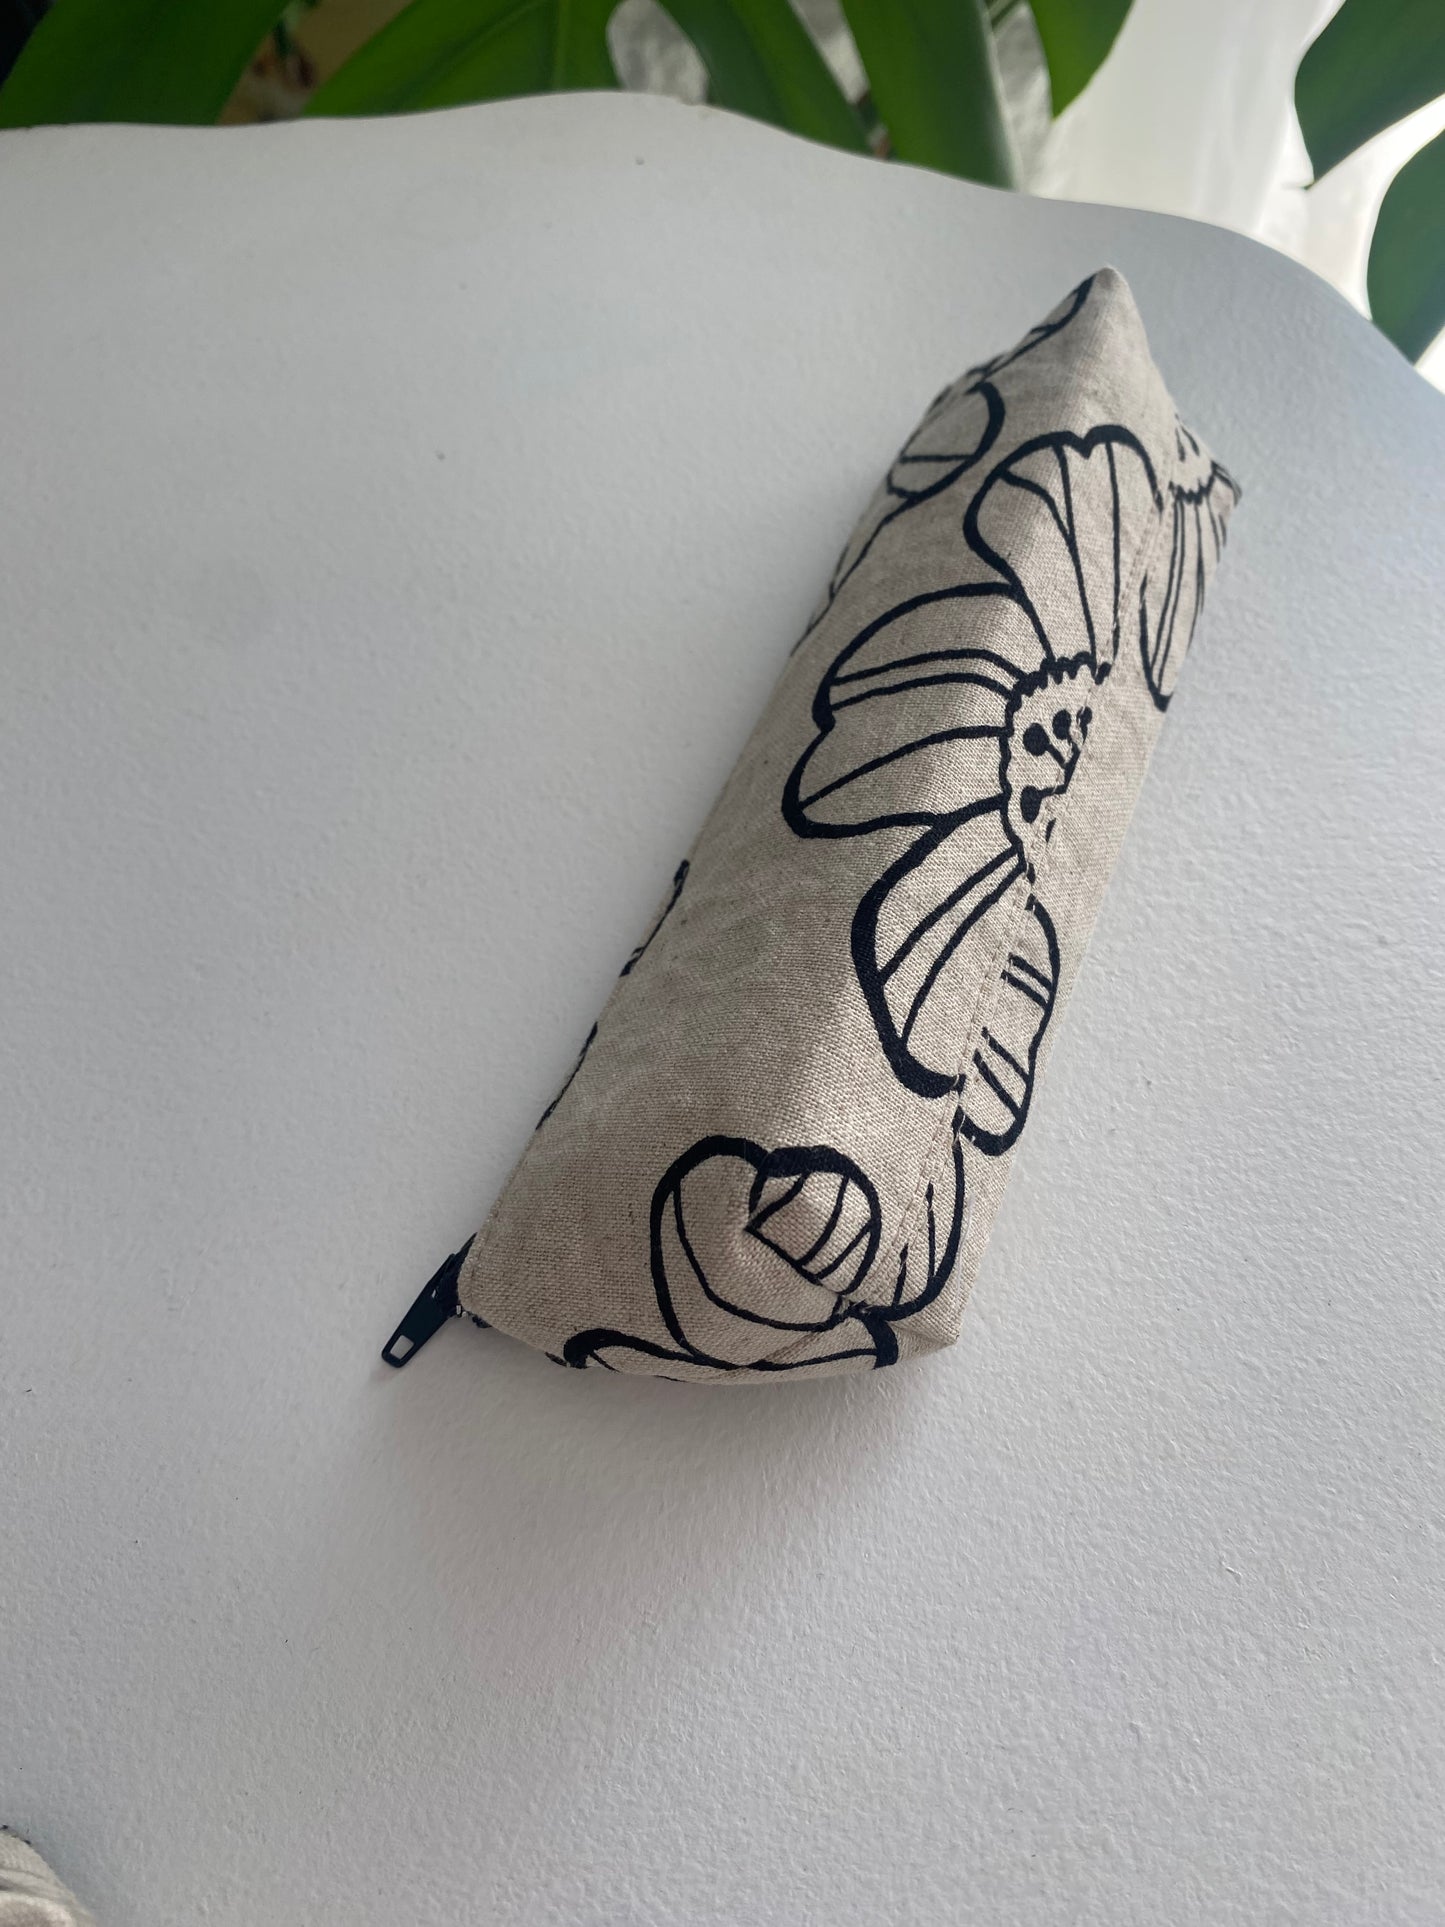 Cotton/Linen Floral Pencil Case